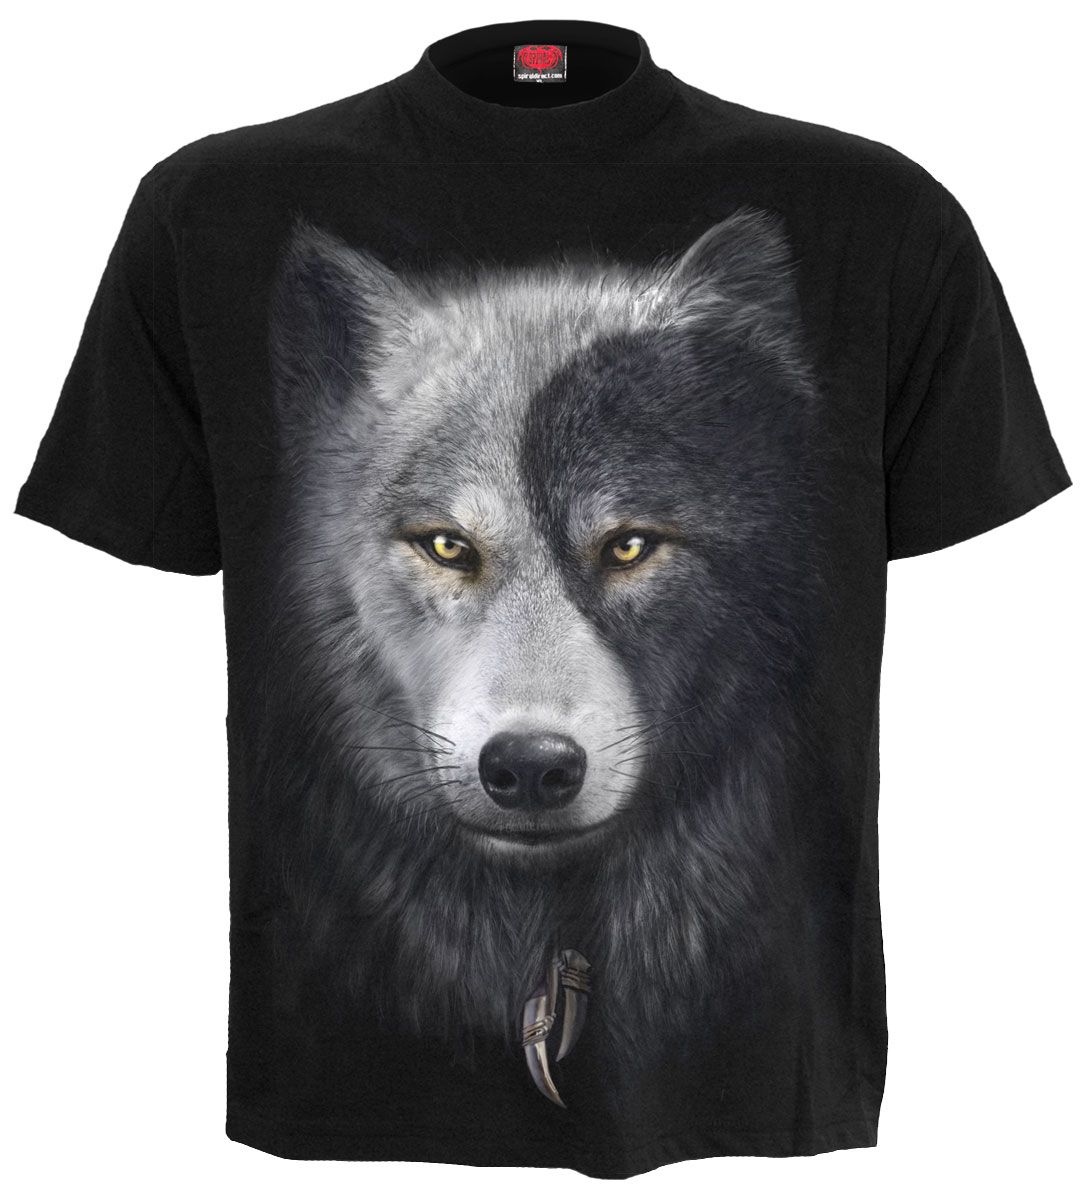 spiral t-shirts,cotton mystical t-shirts,black yin yang t-shirts,wolf t-shirts,black native american t-shirts